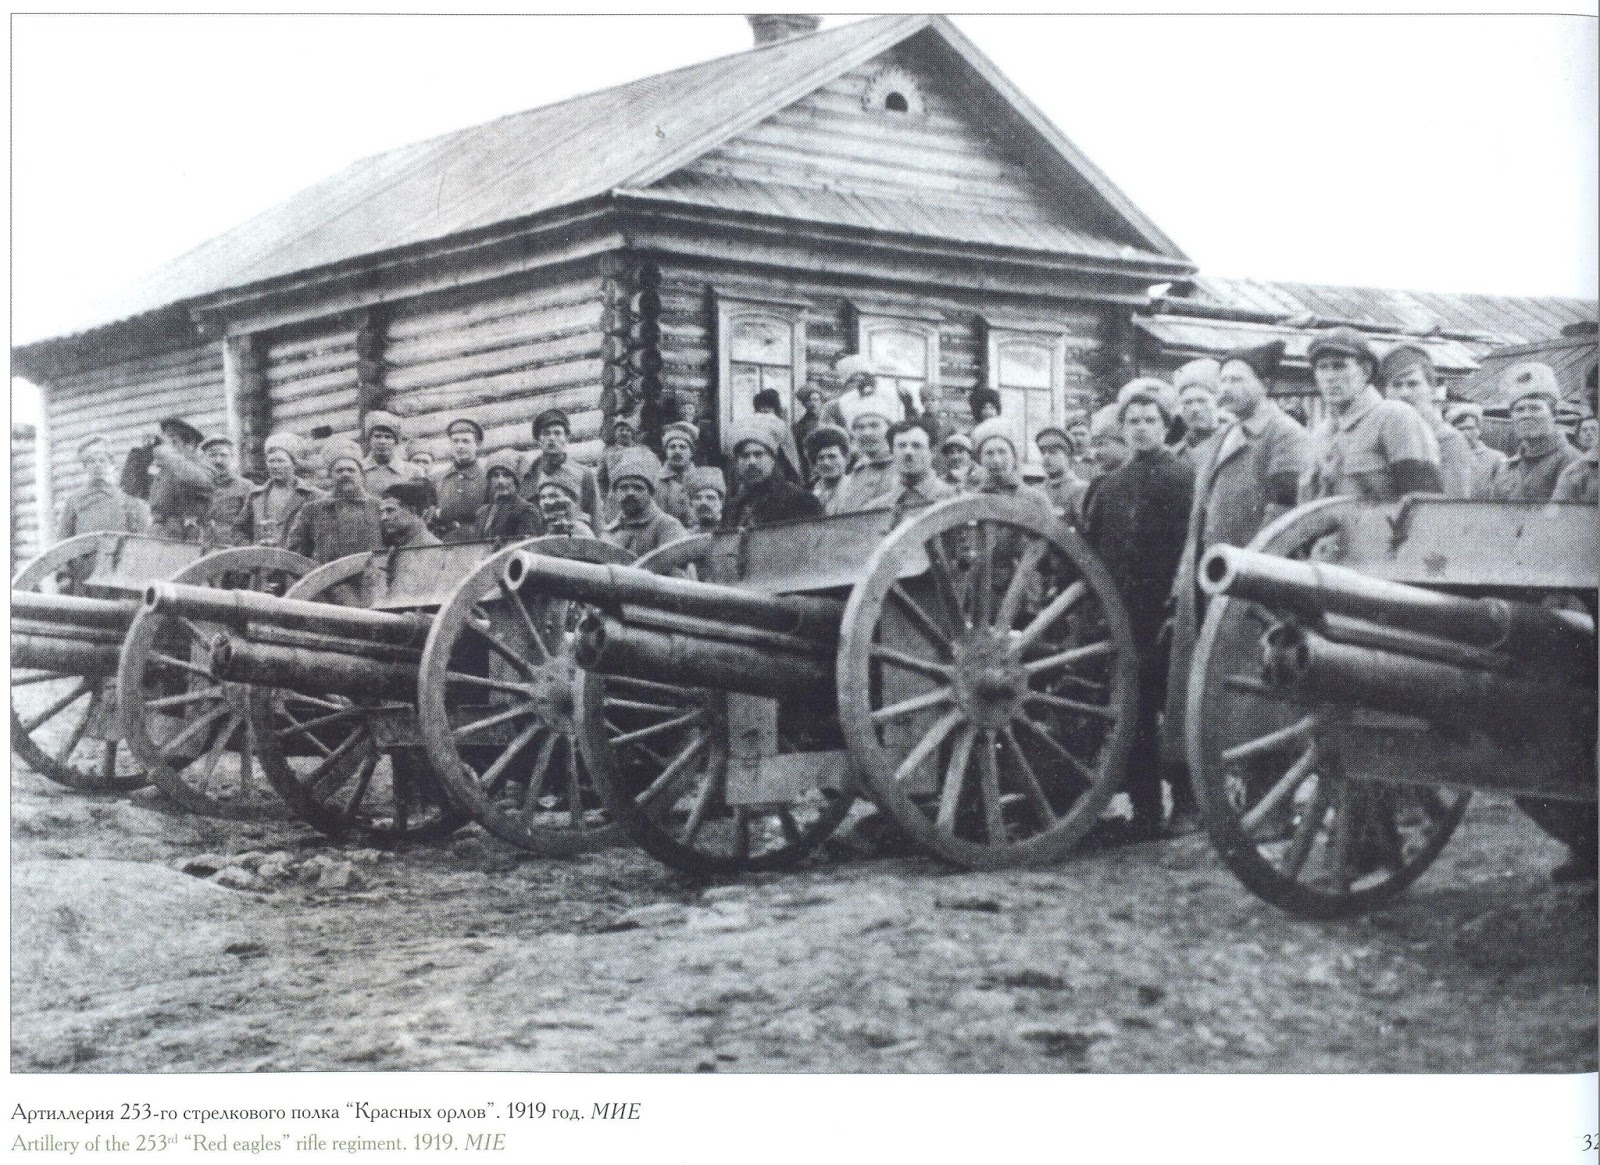 Пушки гражданской войны 1919 года